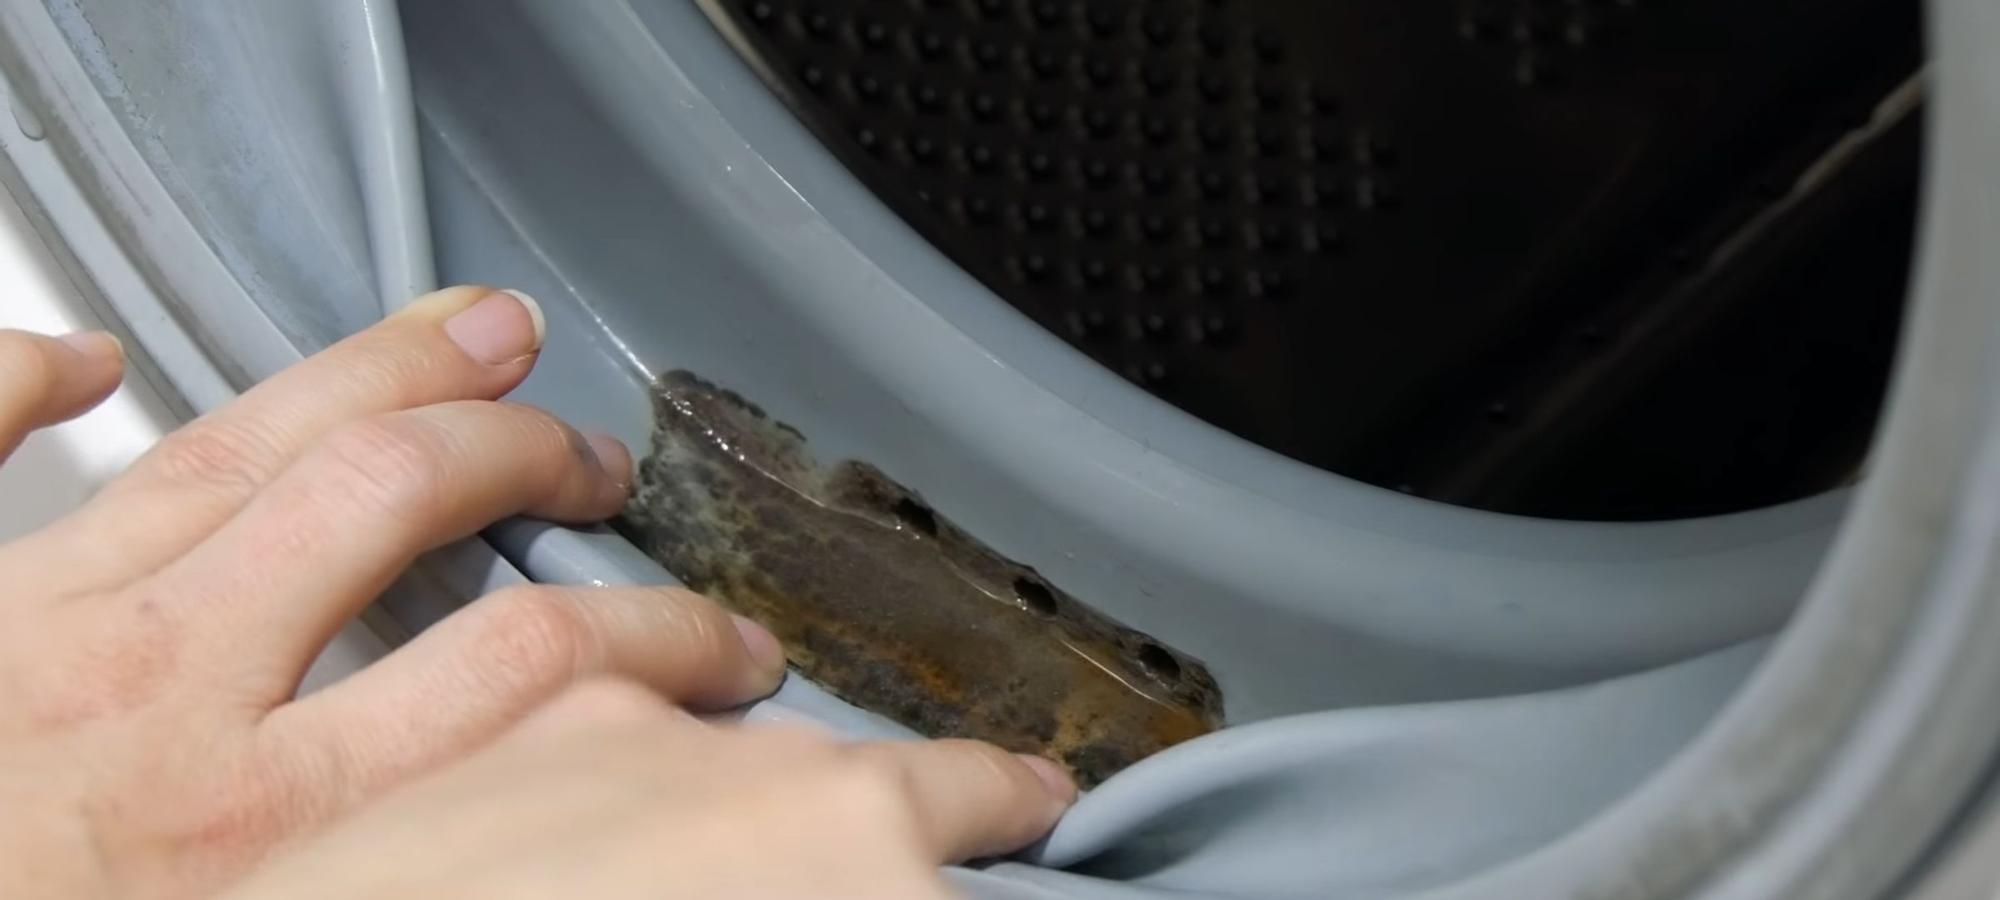 Trucos Limpieza: Cómo limpiar la goma de la lavadora